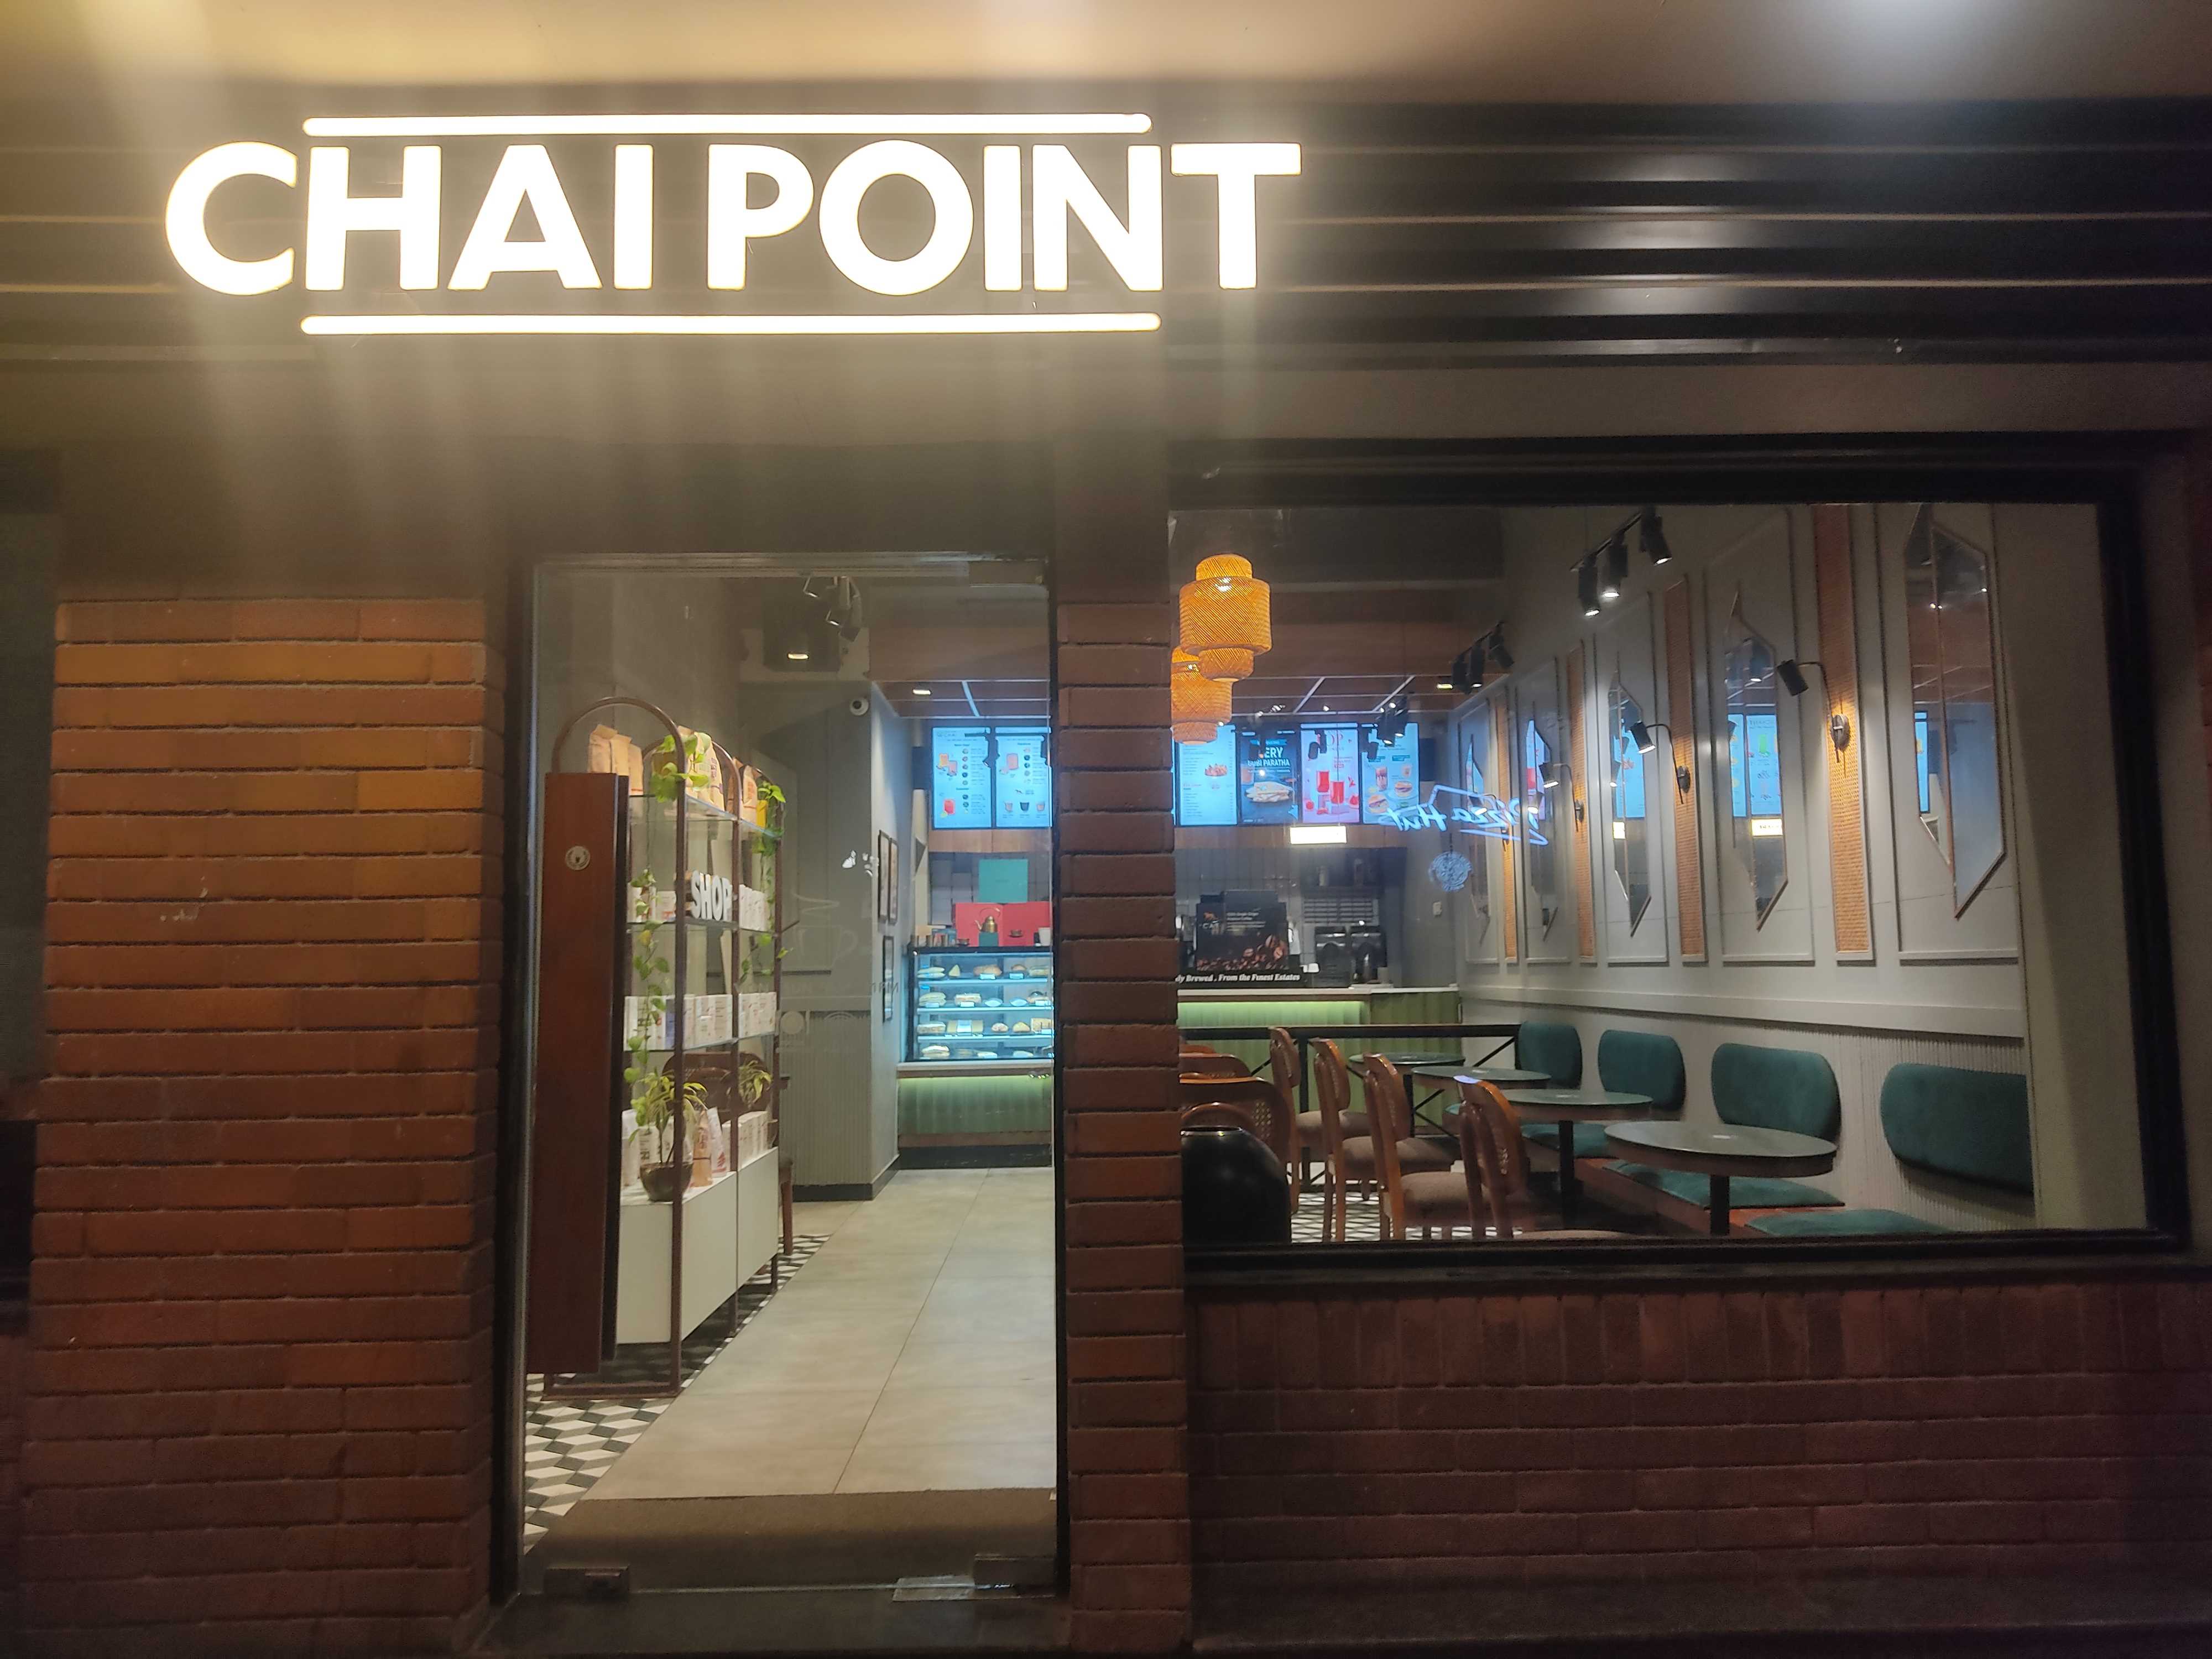 Chai Point - Community center, Saket Cafe - Saket, New Delhi